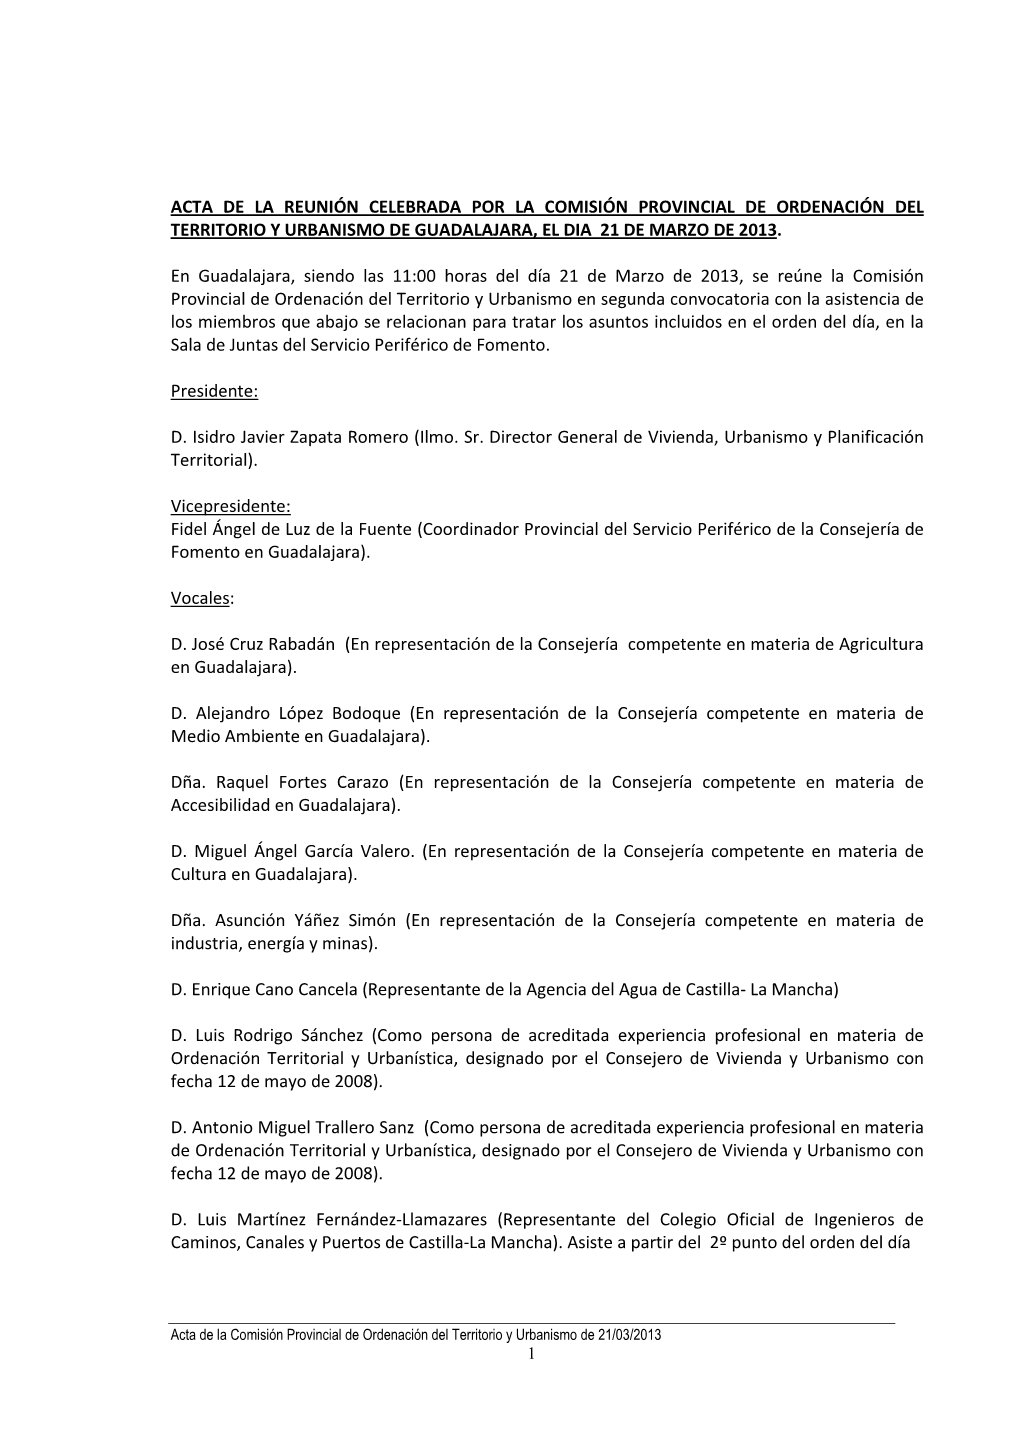 Acta De La Reunión Celebrada Por La Comisión Provincial De Ordenación Del Territorio Y Urbanismo De Guadalajara, El Dia 21 De Marzo De 2013